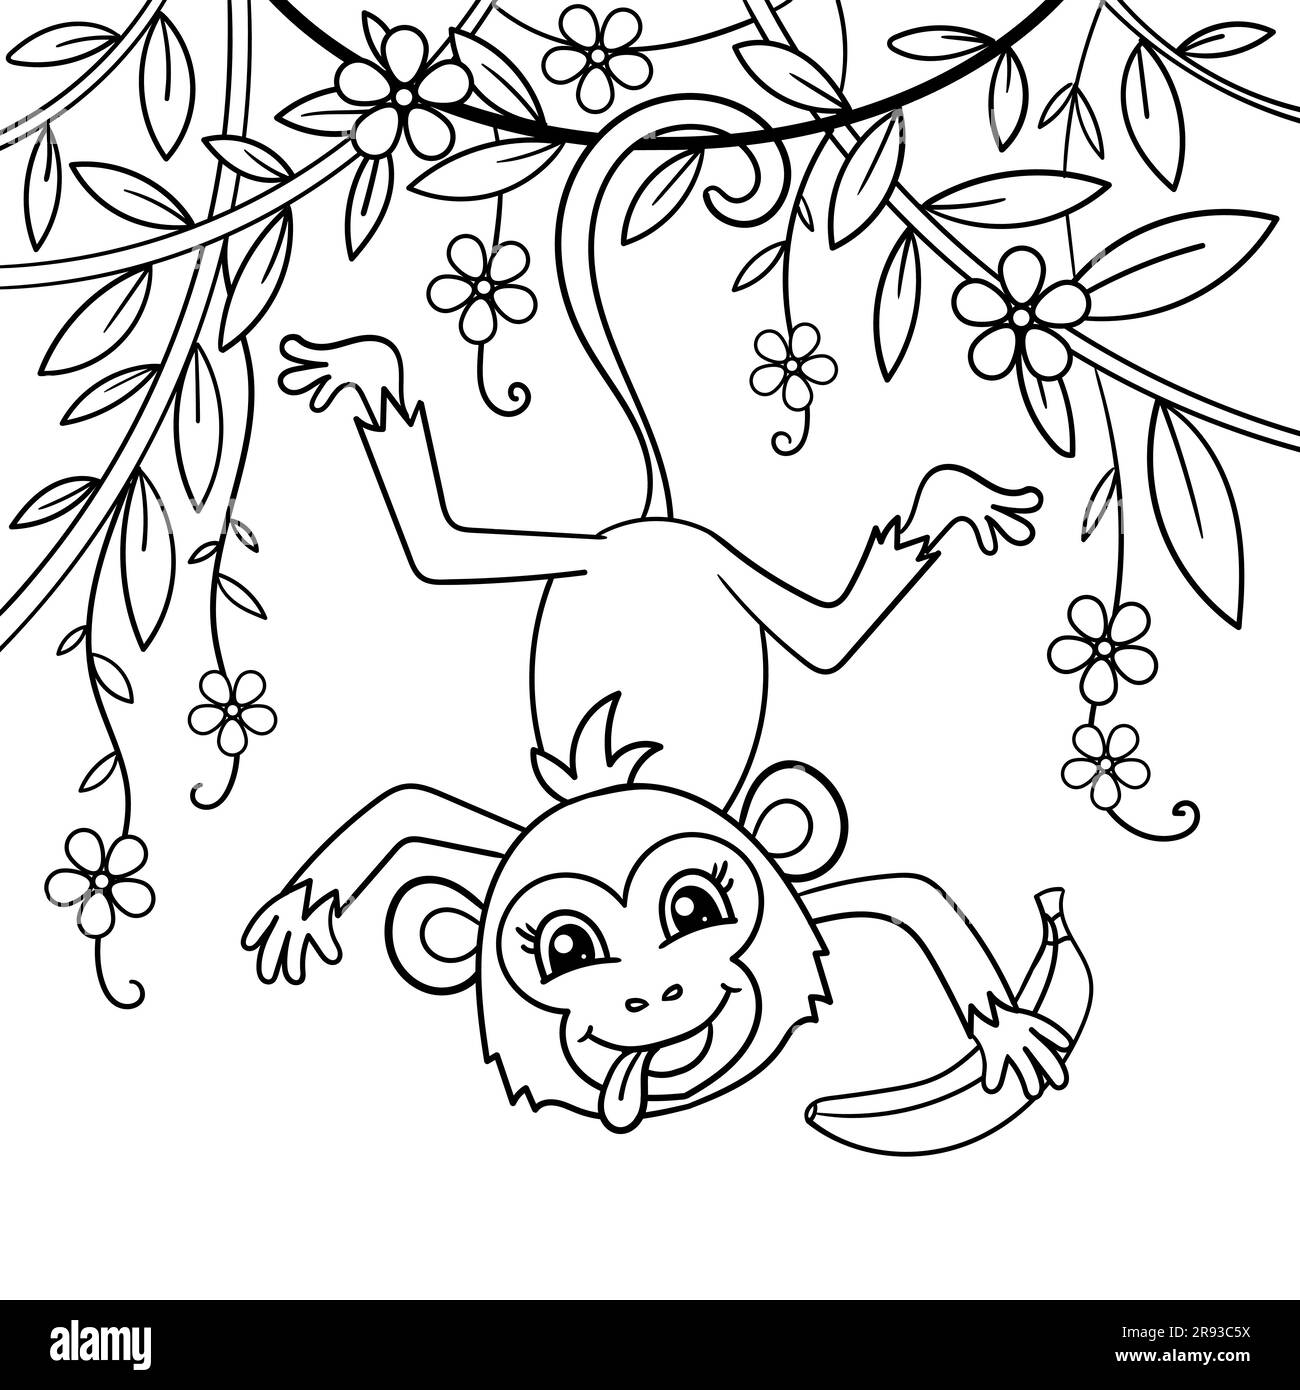 Un singe drôle de dessin animé est accroché à une branche avec une banane. Dessin linéaire noir et blanc. Pour la conception de livres de coloriage pour enfants, des imprimés, des affiches, des posters Illustration de Vecteur